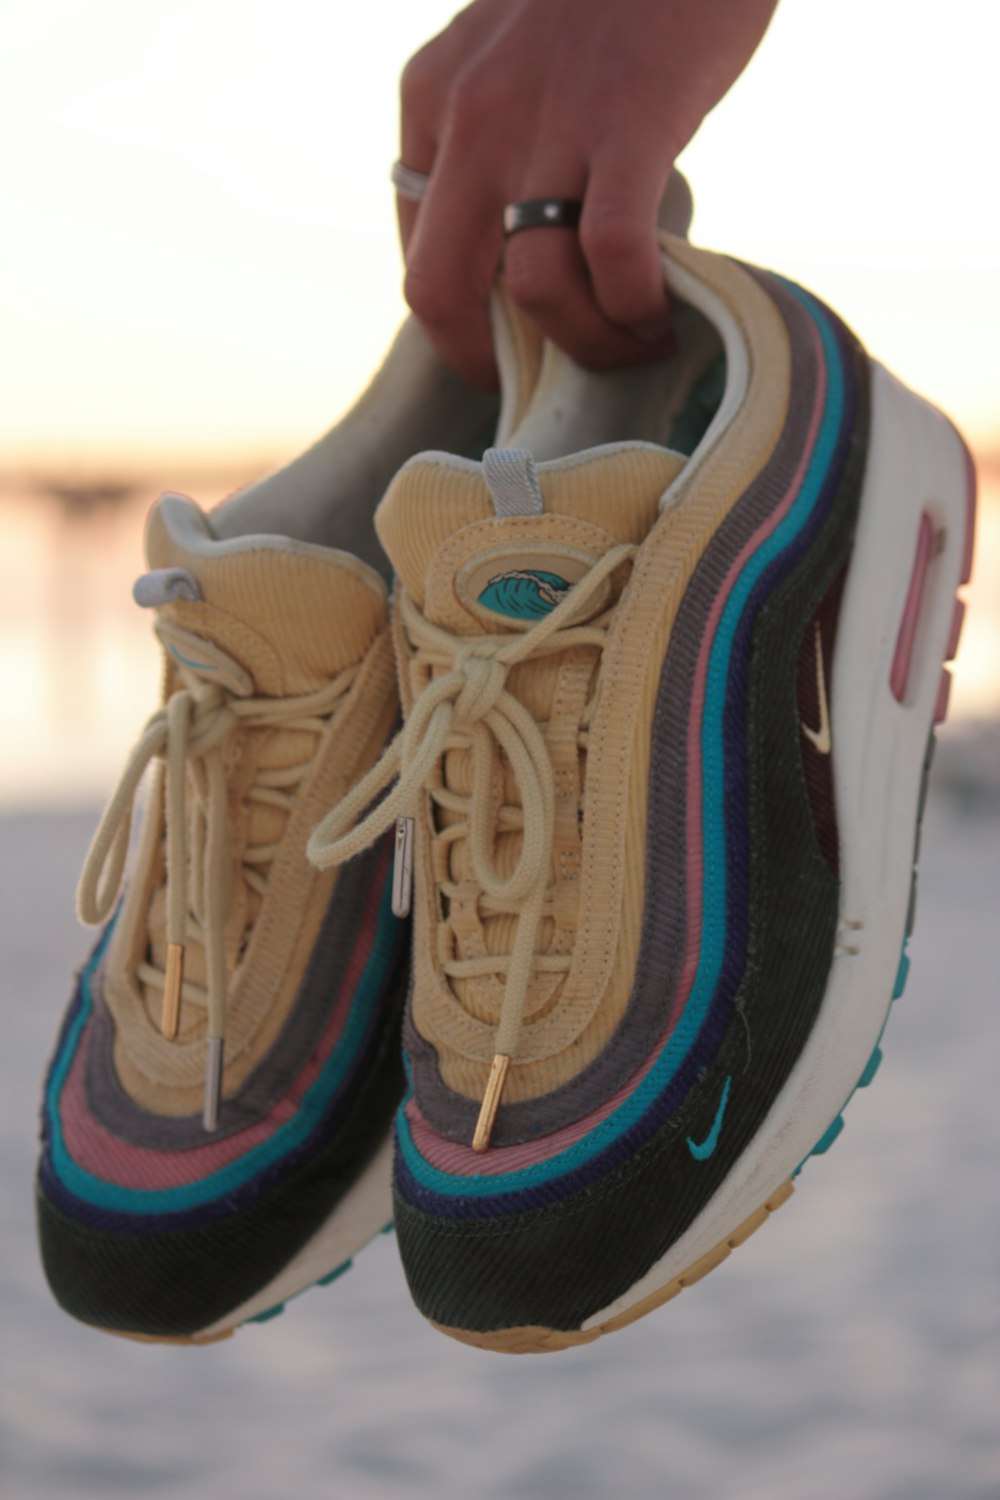 Amigo por correspondencia Viaje Destructivo Foto Nike Air Max 97 negro y beige – Imagen Zapatos gratis en Unsplash